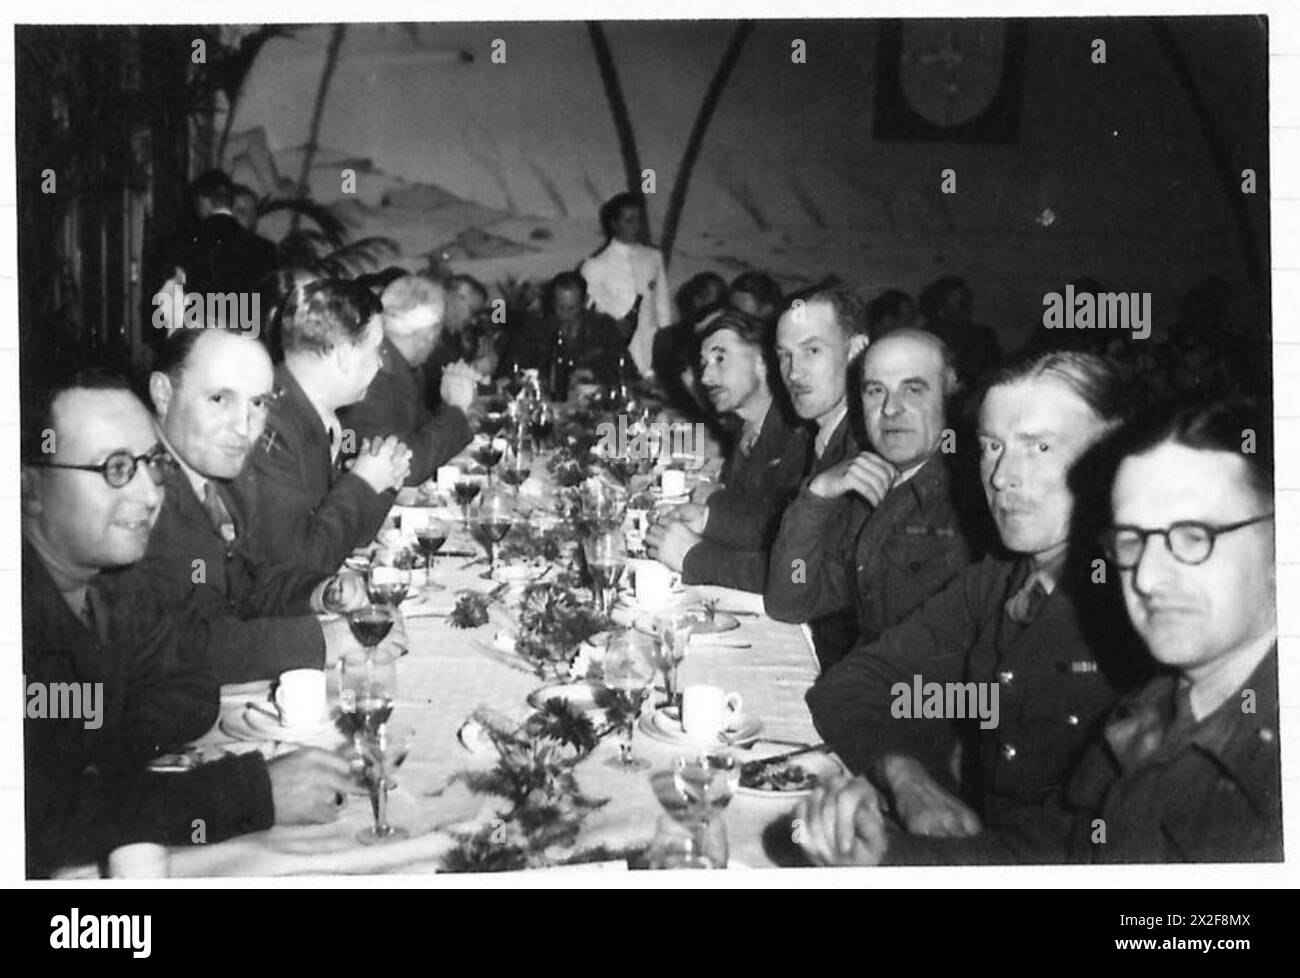 CENA ALAMEIN - 10. Fotocamera a sinistra del tavolo: Leonard Mosley Brig. C.L. RICHARDSON DSO, OBE. Capo tavola:- Maj-Gen. M.W.A.P. GRAHAM, CB, CBE, MC. Lato destro del tavolino, da dietro a davanti:- tenente colonnello C.A.R. Coghill, OBE. LT-col M. St. J. Oswald, MC. Brig. M. YATES DSO, OBE. LT-col. J.C. Edlmann. Colonnello J.O. Ewart. OBE British Army, 21st Army Group Foto Stock